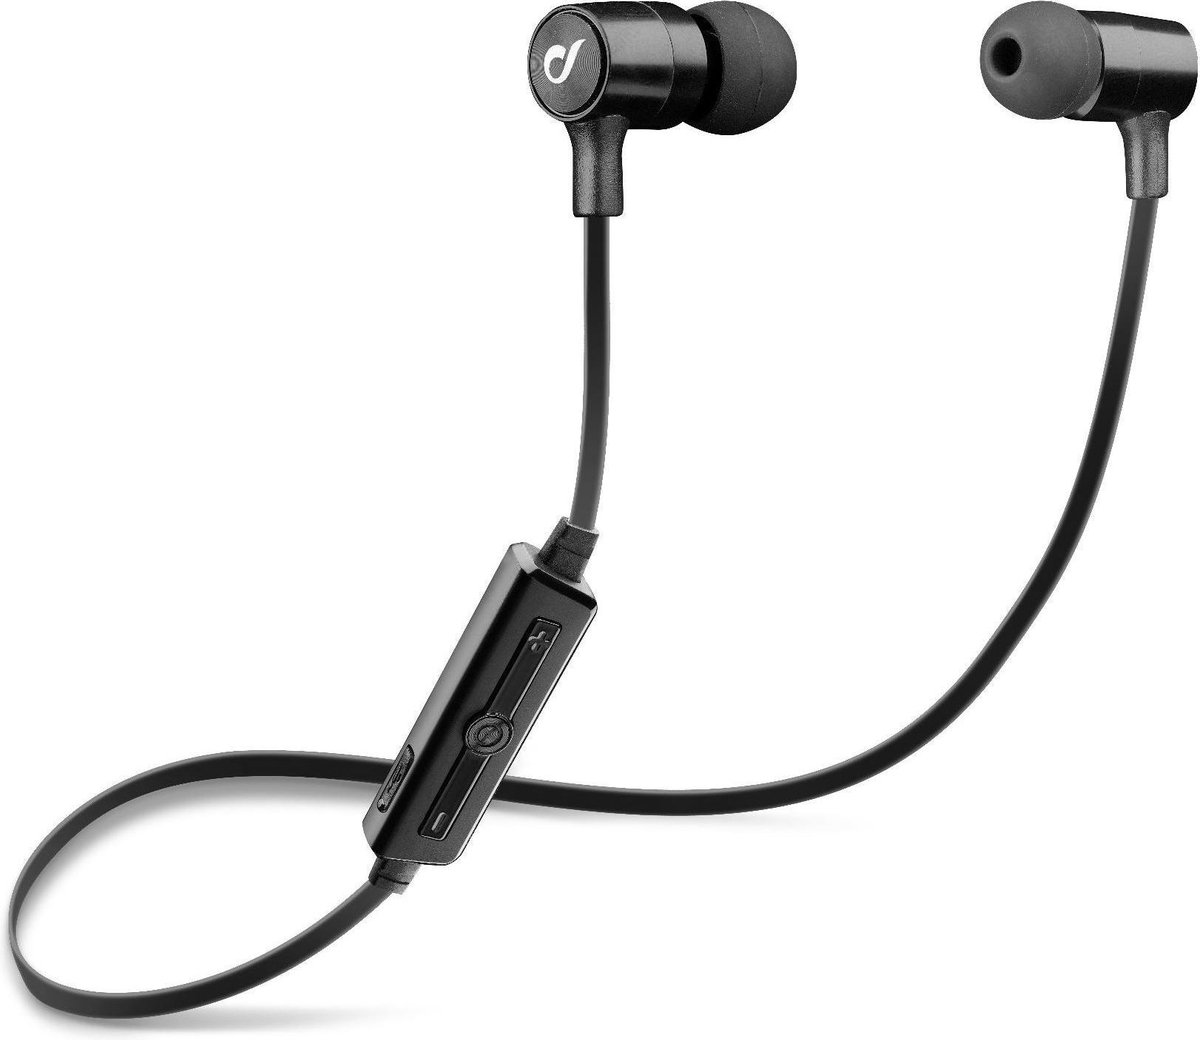 Cellularline LABTAUINEARK hoofdtelefoon/headset In-ear Zwart